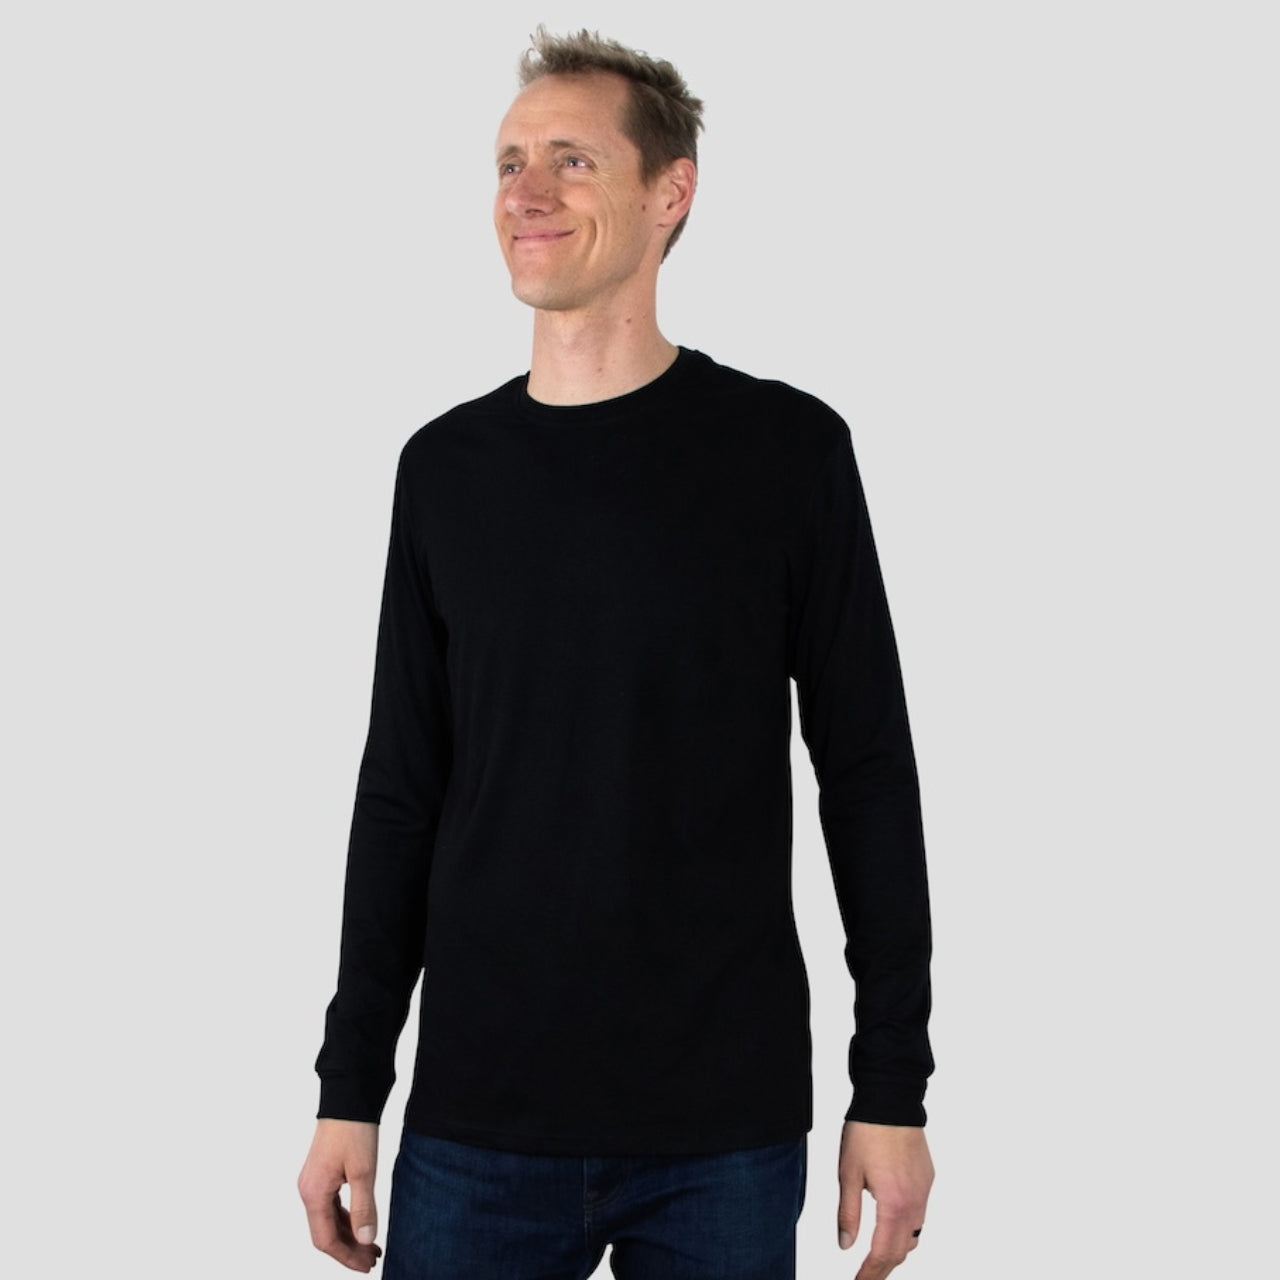 Black Long Sleeve Crew Neck Shirt for Tall Slim Men